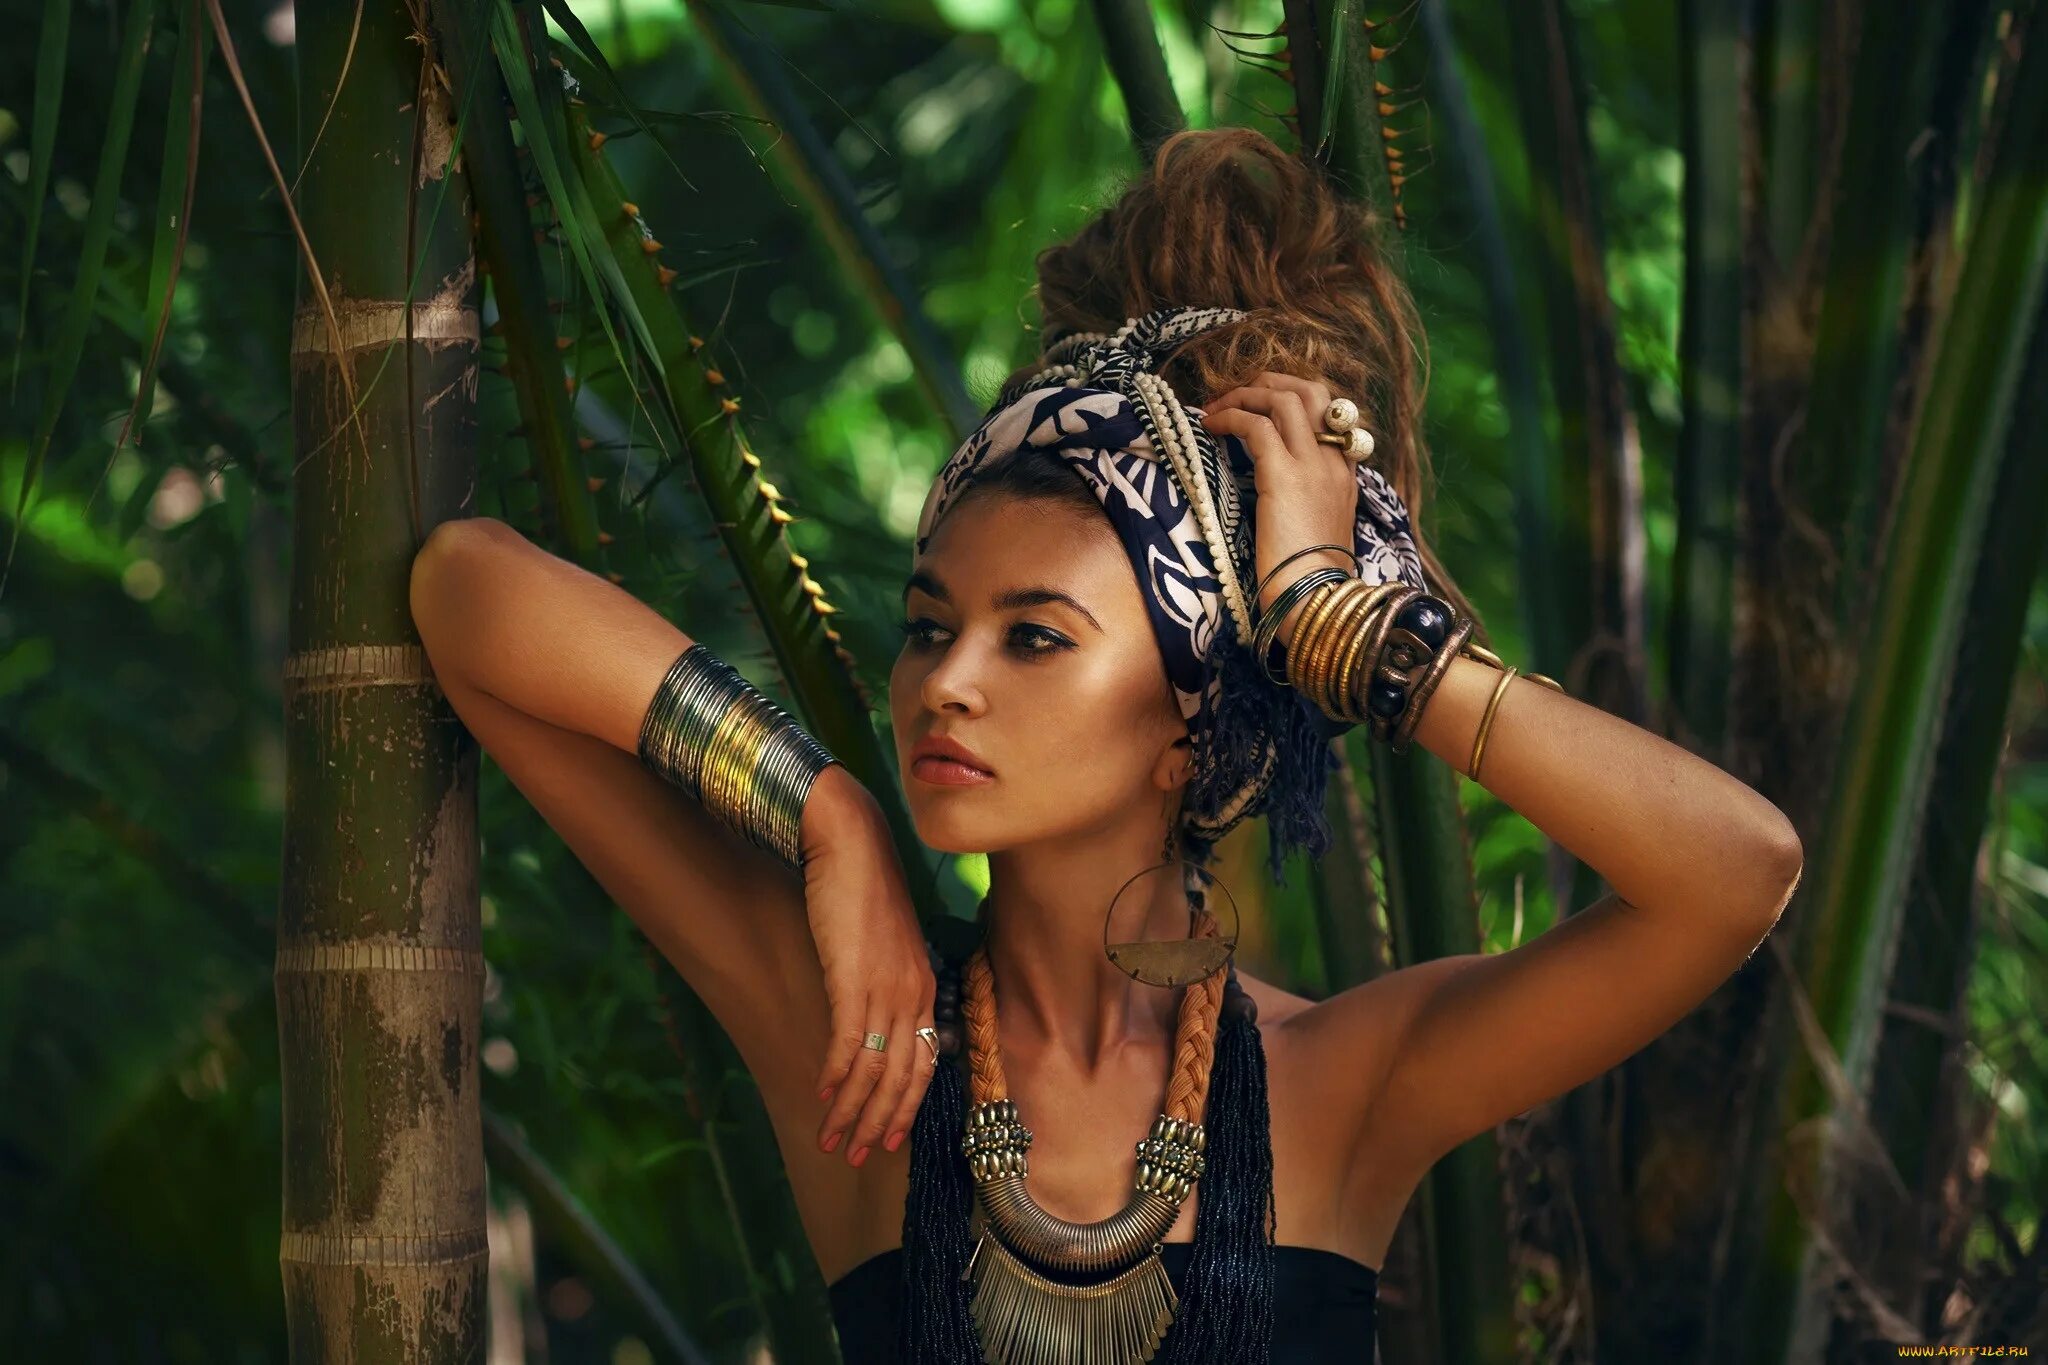 Хелена Ховард дикарки. Прическа амазонки. Девушка в тропиках. Девушка в джунглях. Экзотический образ